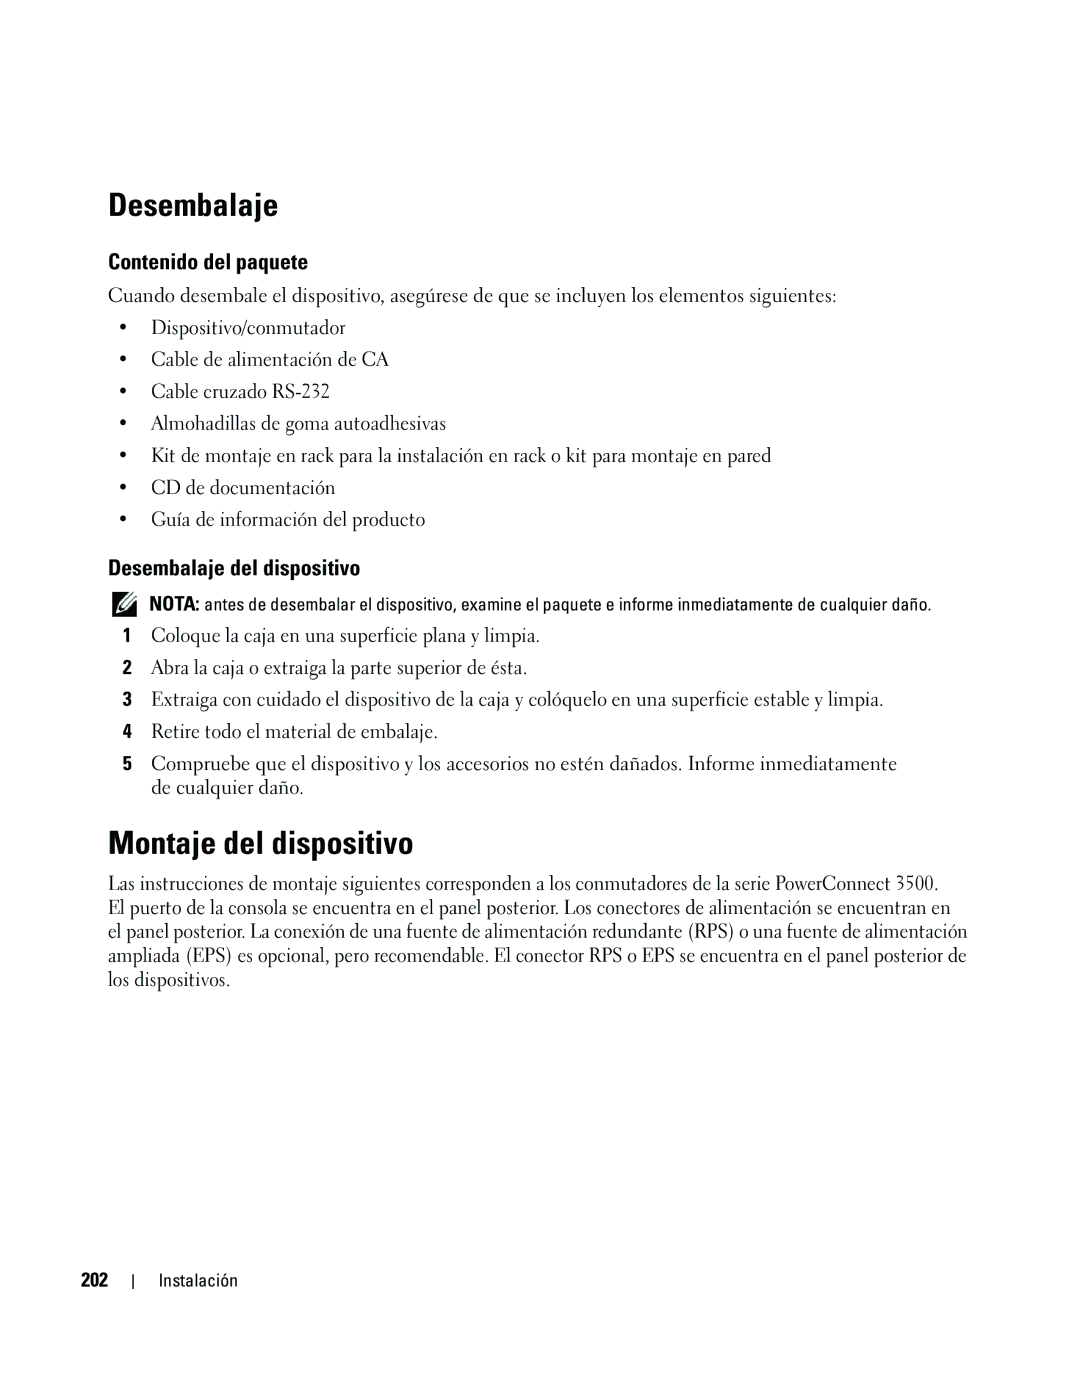 Dell 35XX manual Montaje del dispositivo, Contenido del paquete, Desembalaje del dispositivo, 202 